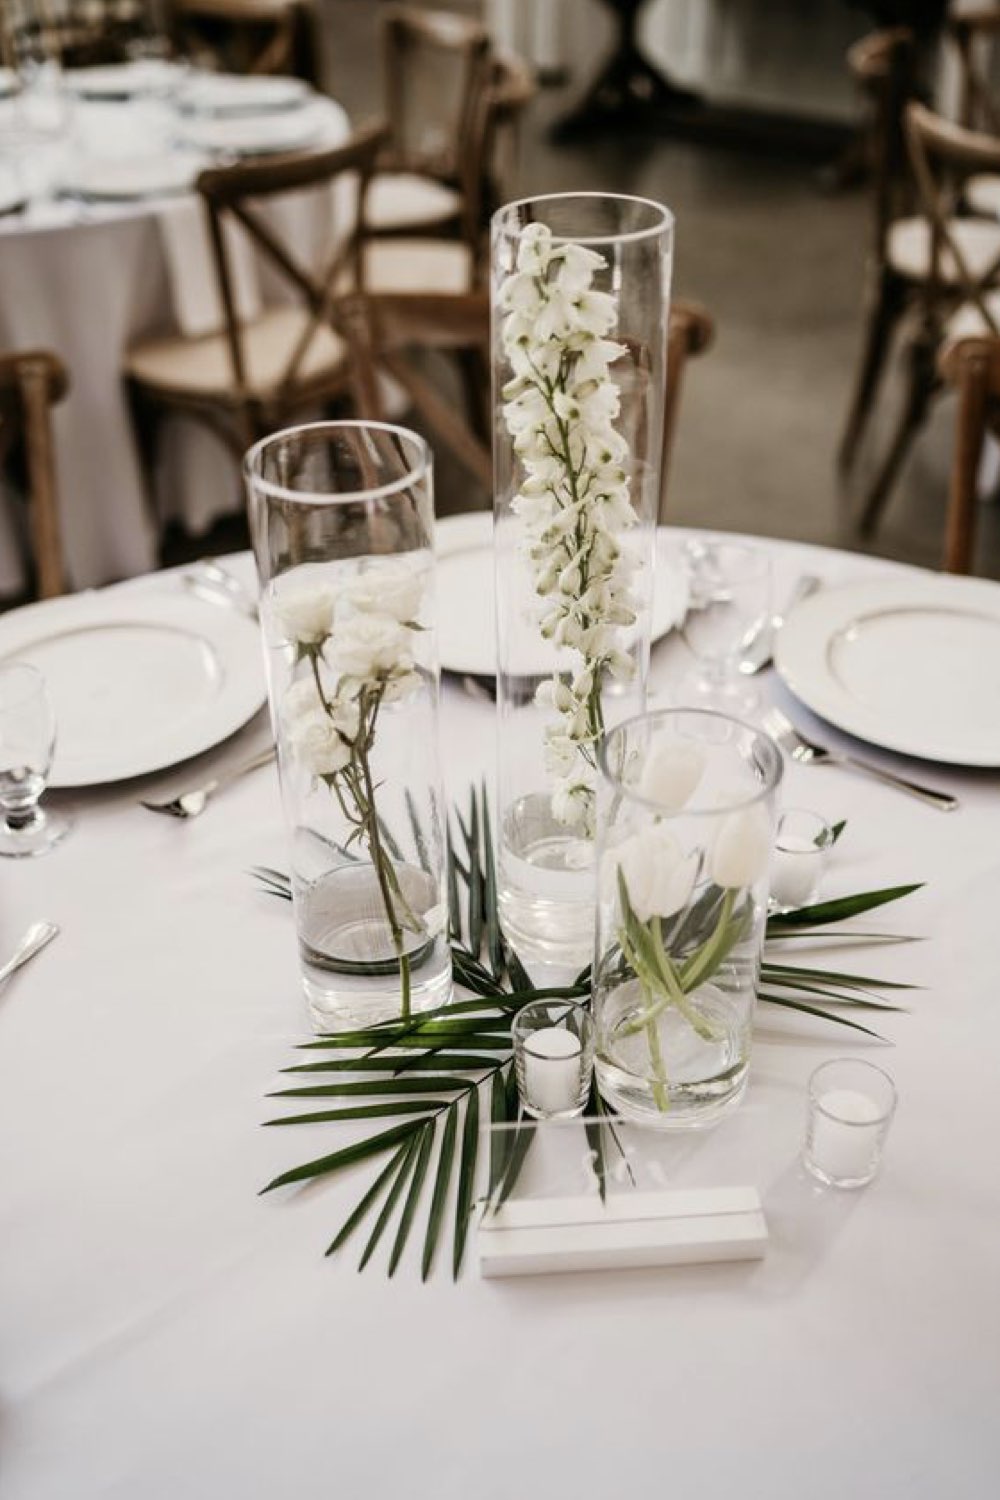 decoration mariage simple minimal chic centre de table vase en verre feuillage plante tropical pas cher idée à copier